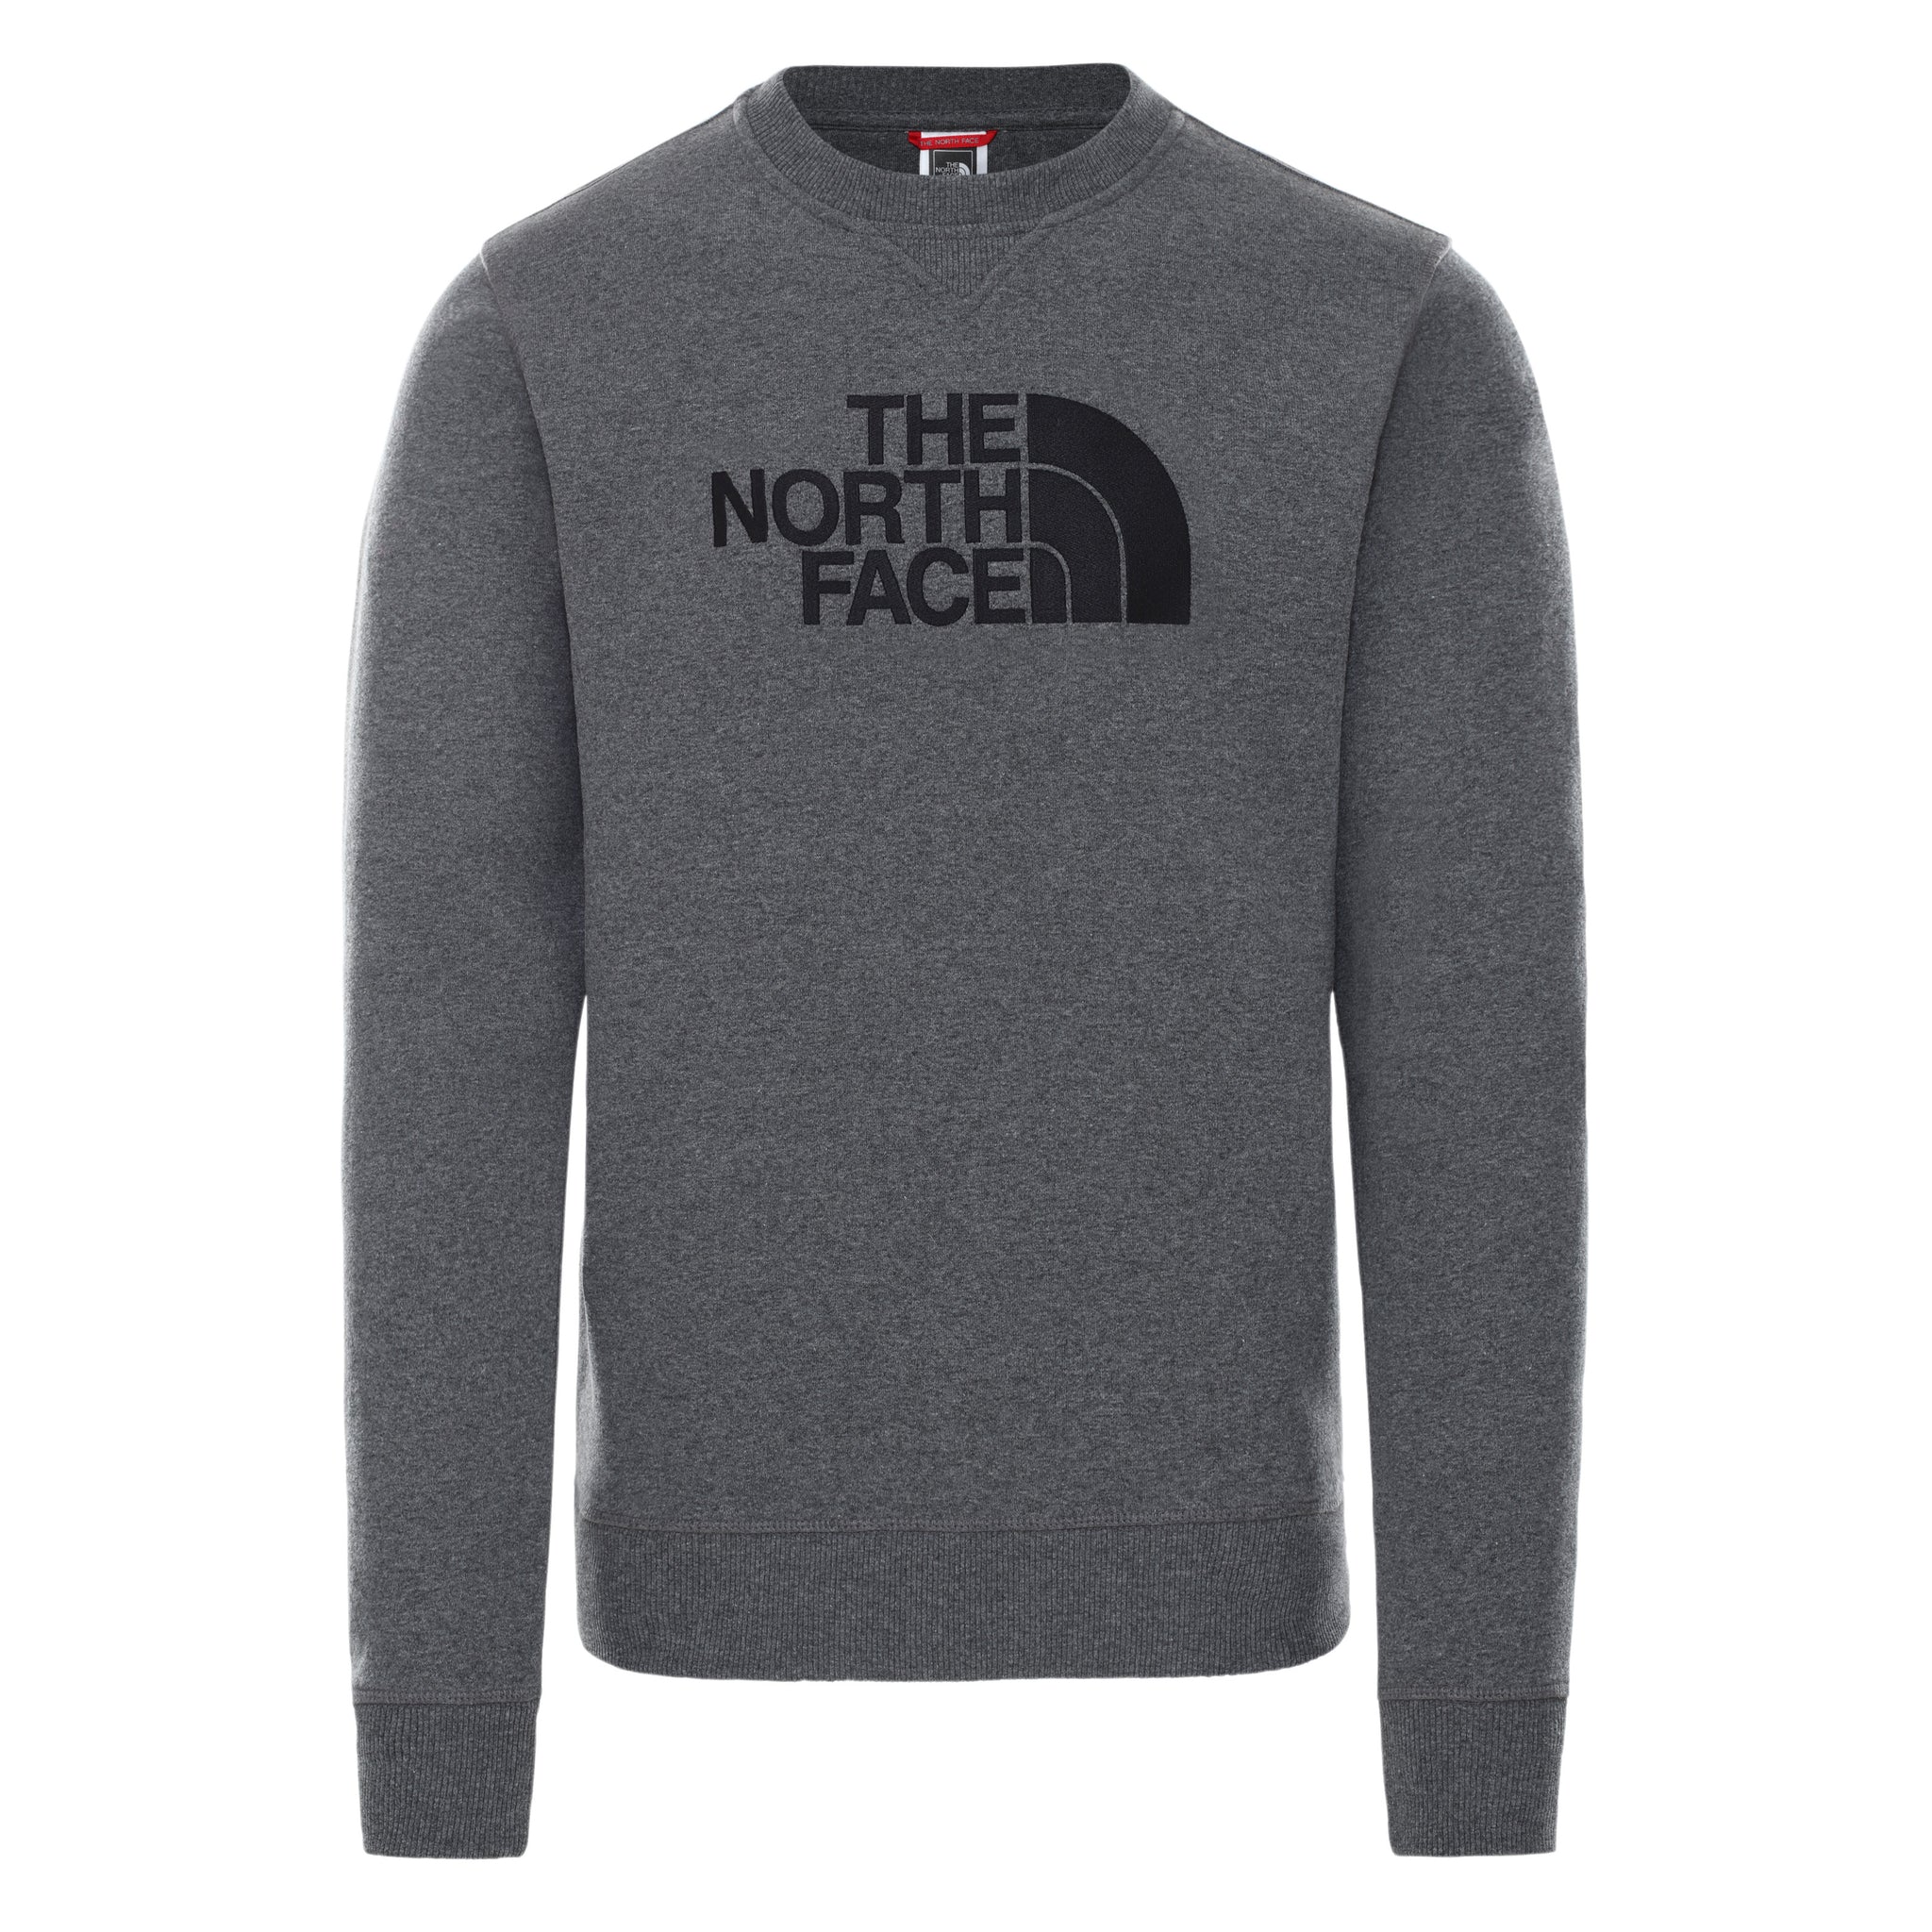 Felpa The North Face Girocollo / Grigio - Ideal Moda